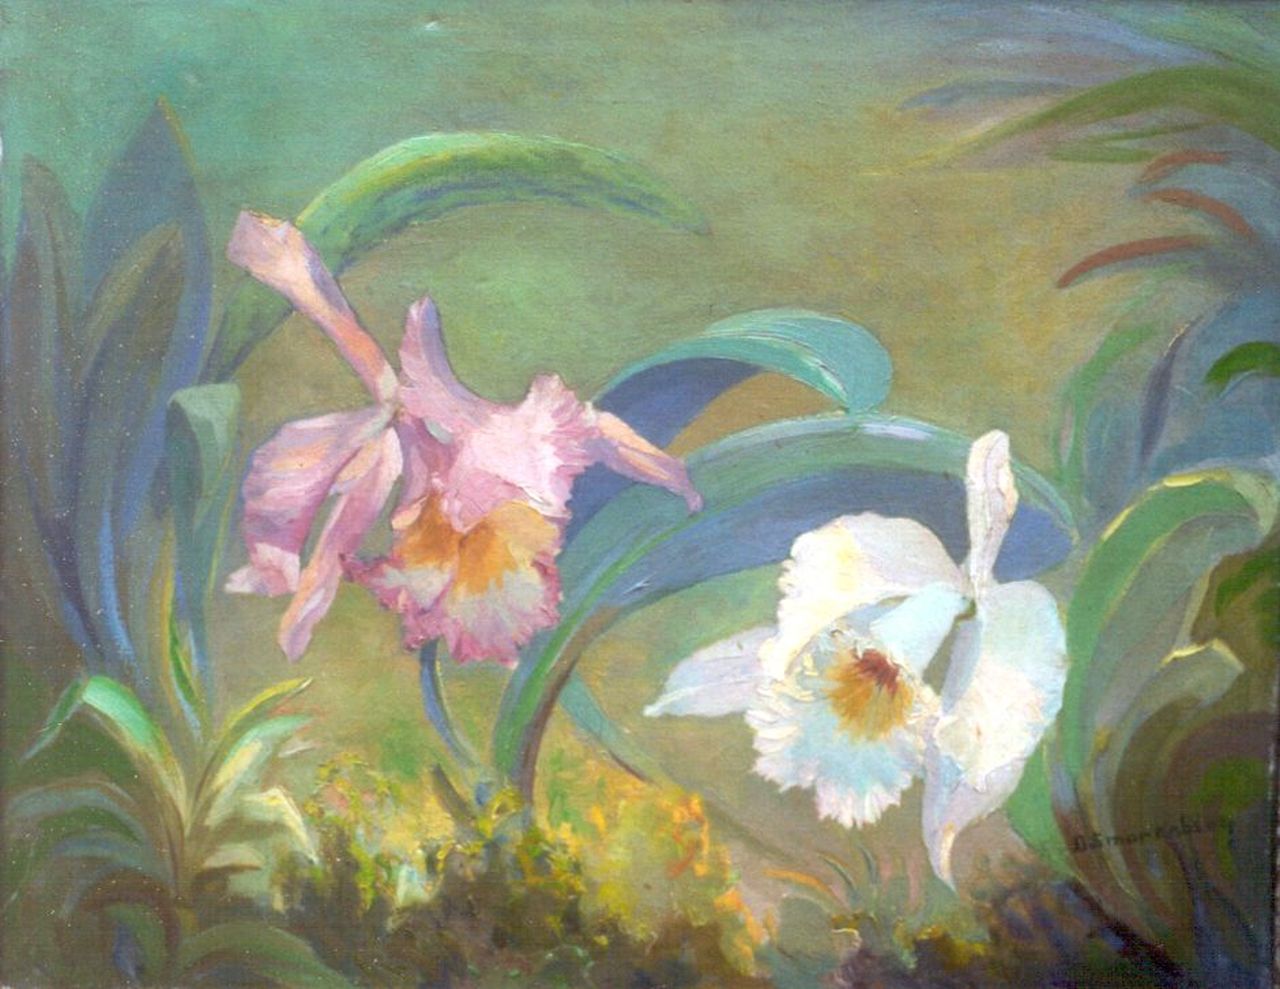 Smorenberg D.  | Dirk Smorenberg, Orchids, oil on canvas 40.2 x 49.6 cm, signed l.r.